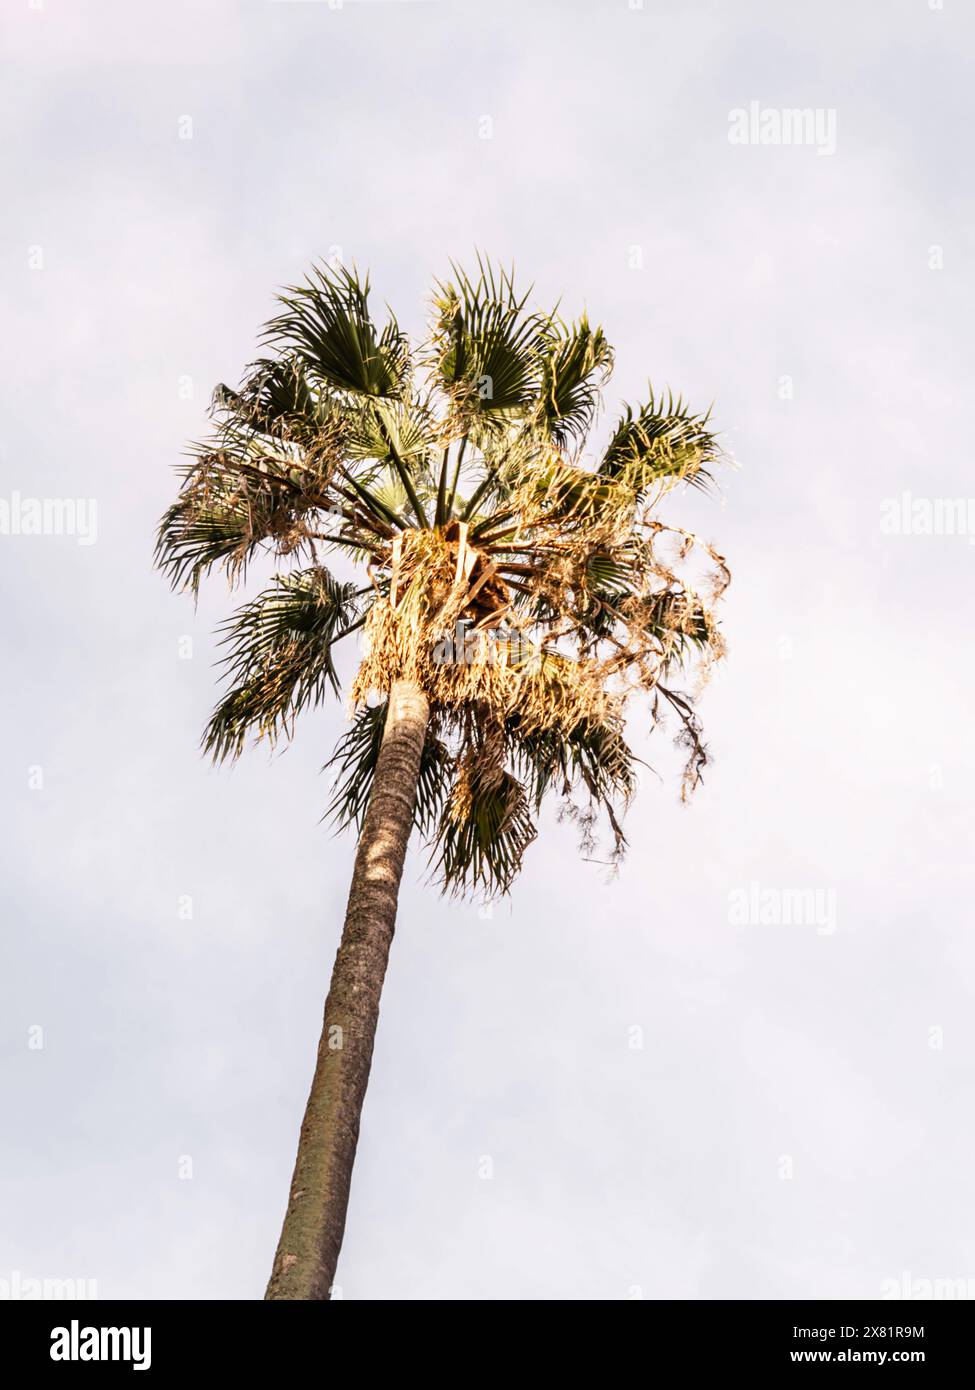 Eine große grüne Palme vor einem weißen Himmel. Palme auf weißem Hintergrund. Ansicht von unten Stockfoto